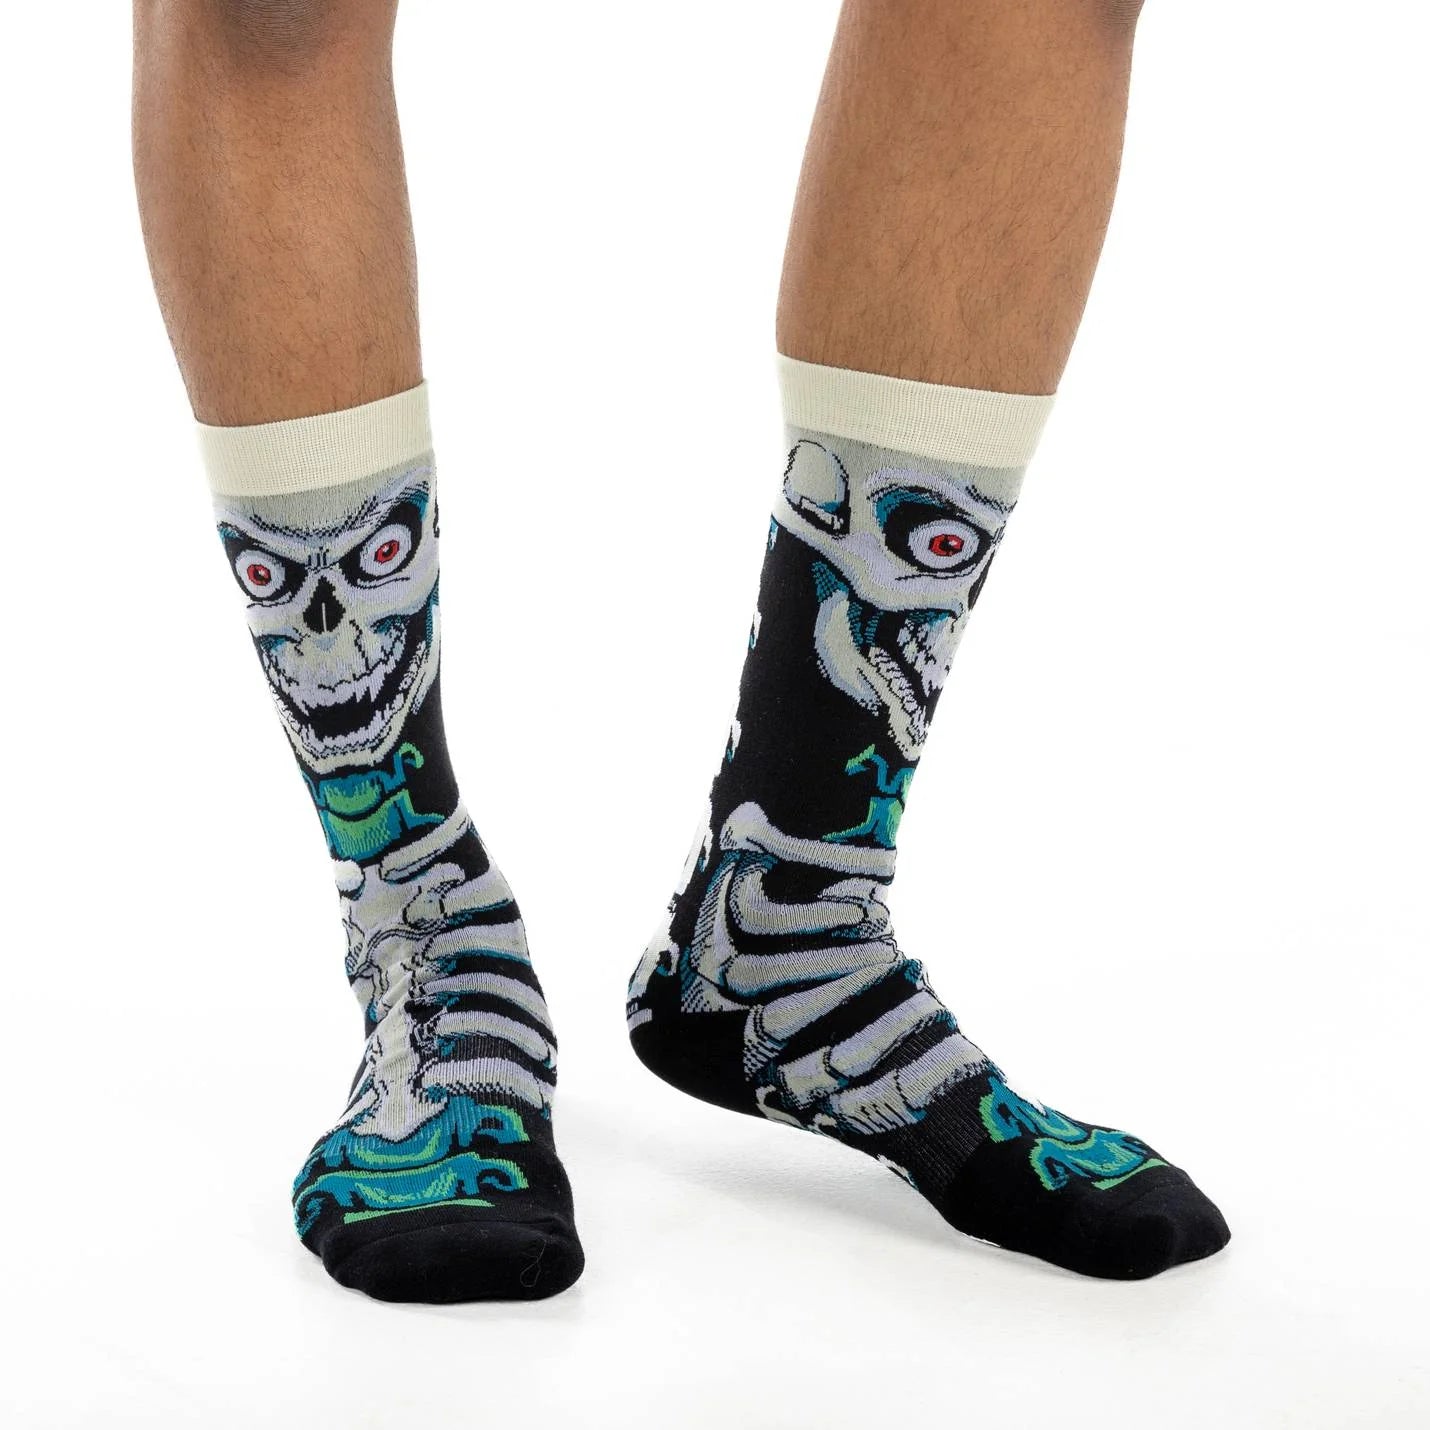 Good Luck Sock - Evil Skeleton Socks Men's